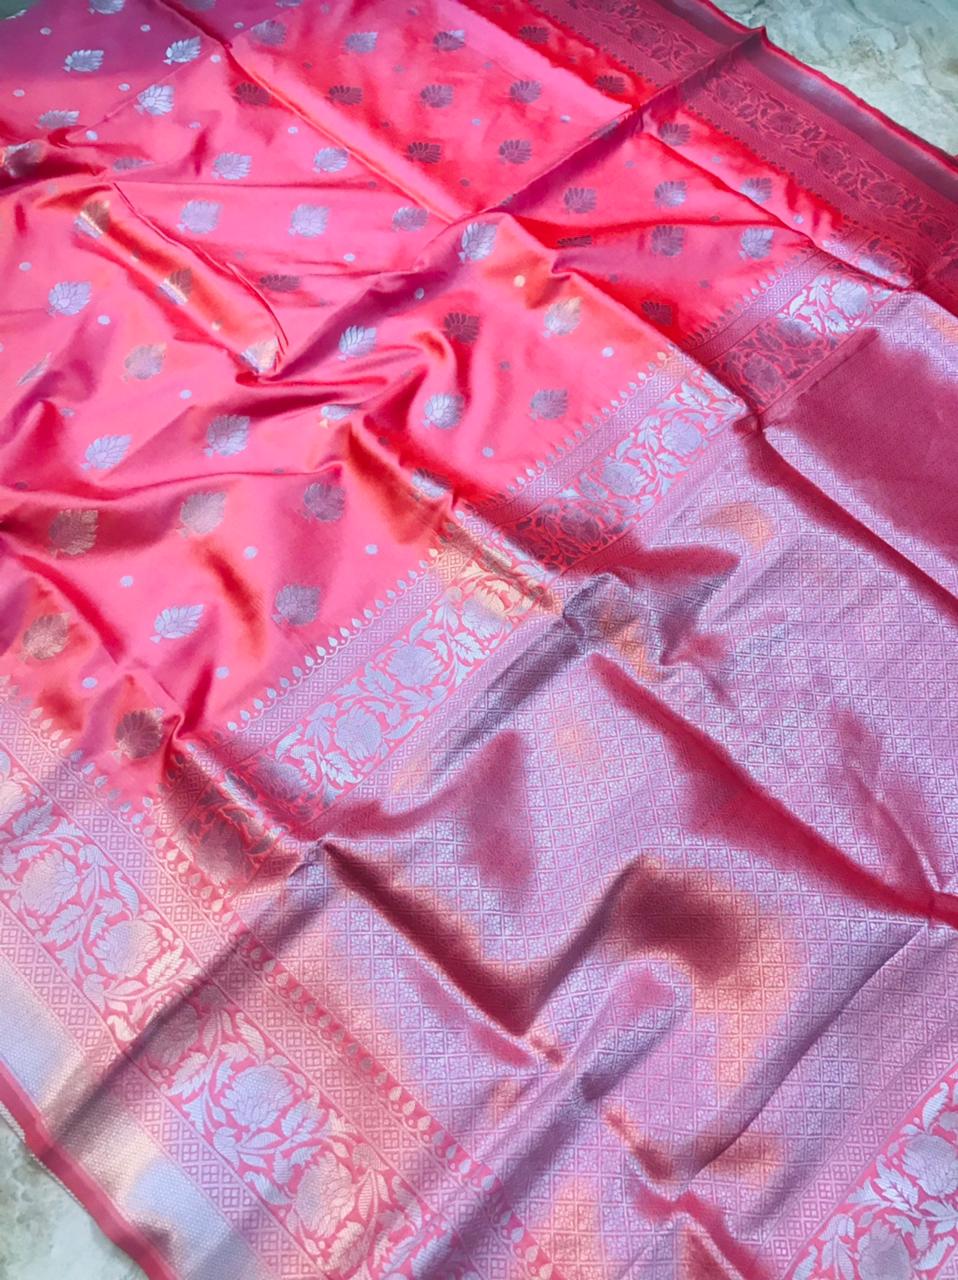 Elaborate Baby Pink Banarasi Silk Saree With Symmetrical Blouse Piece